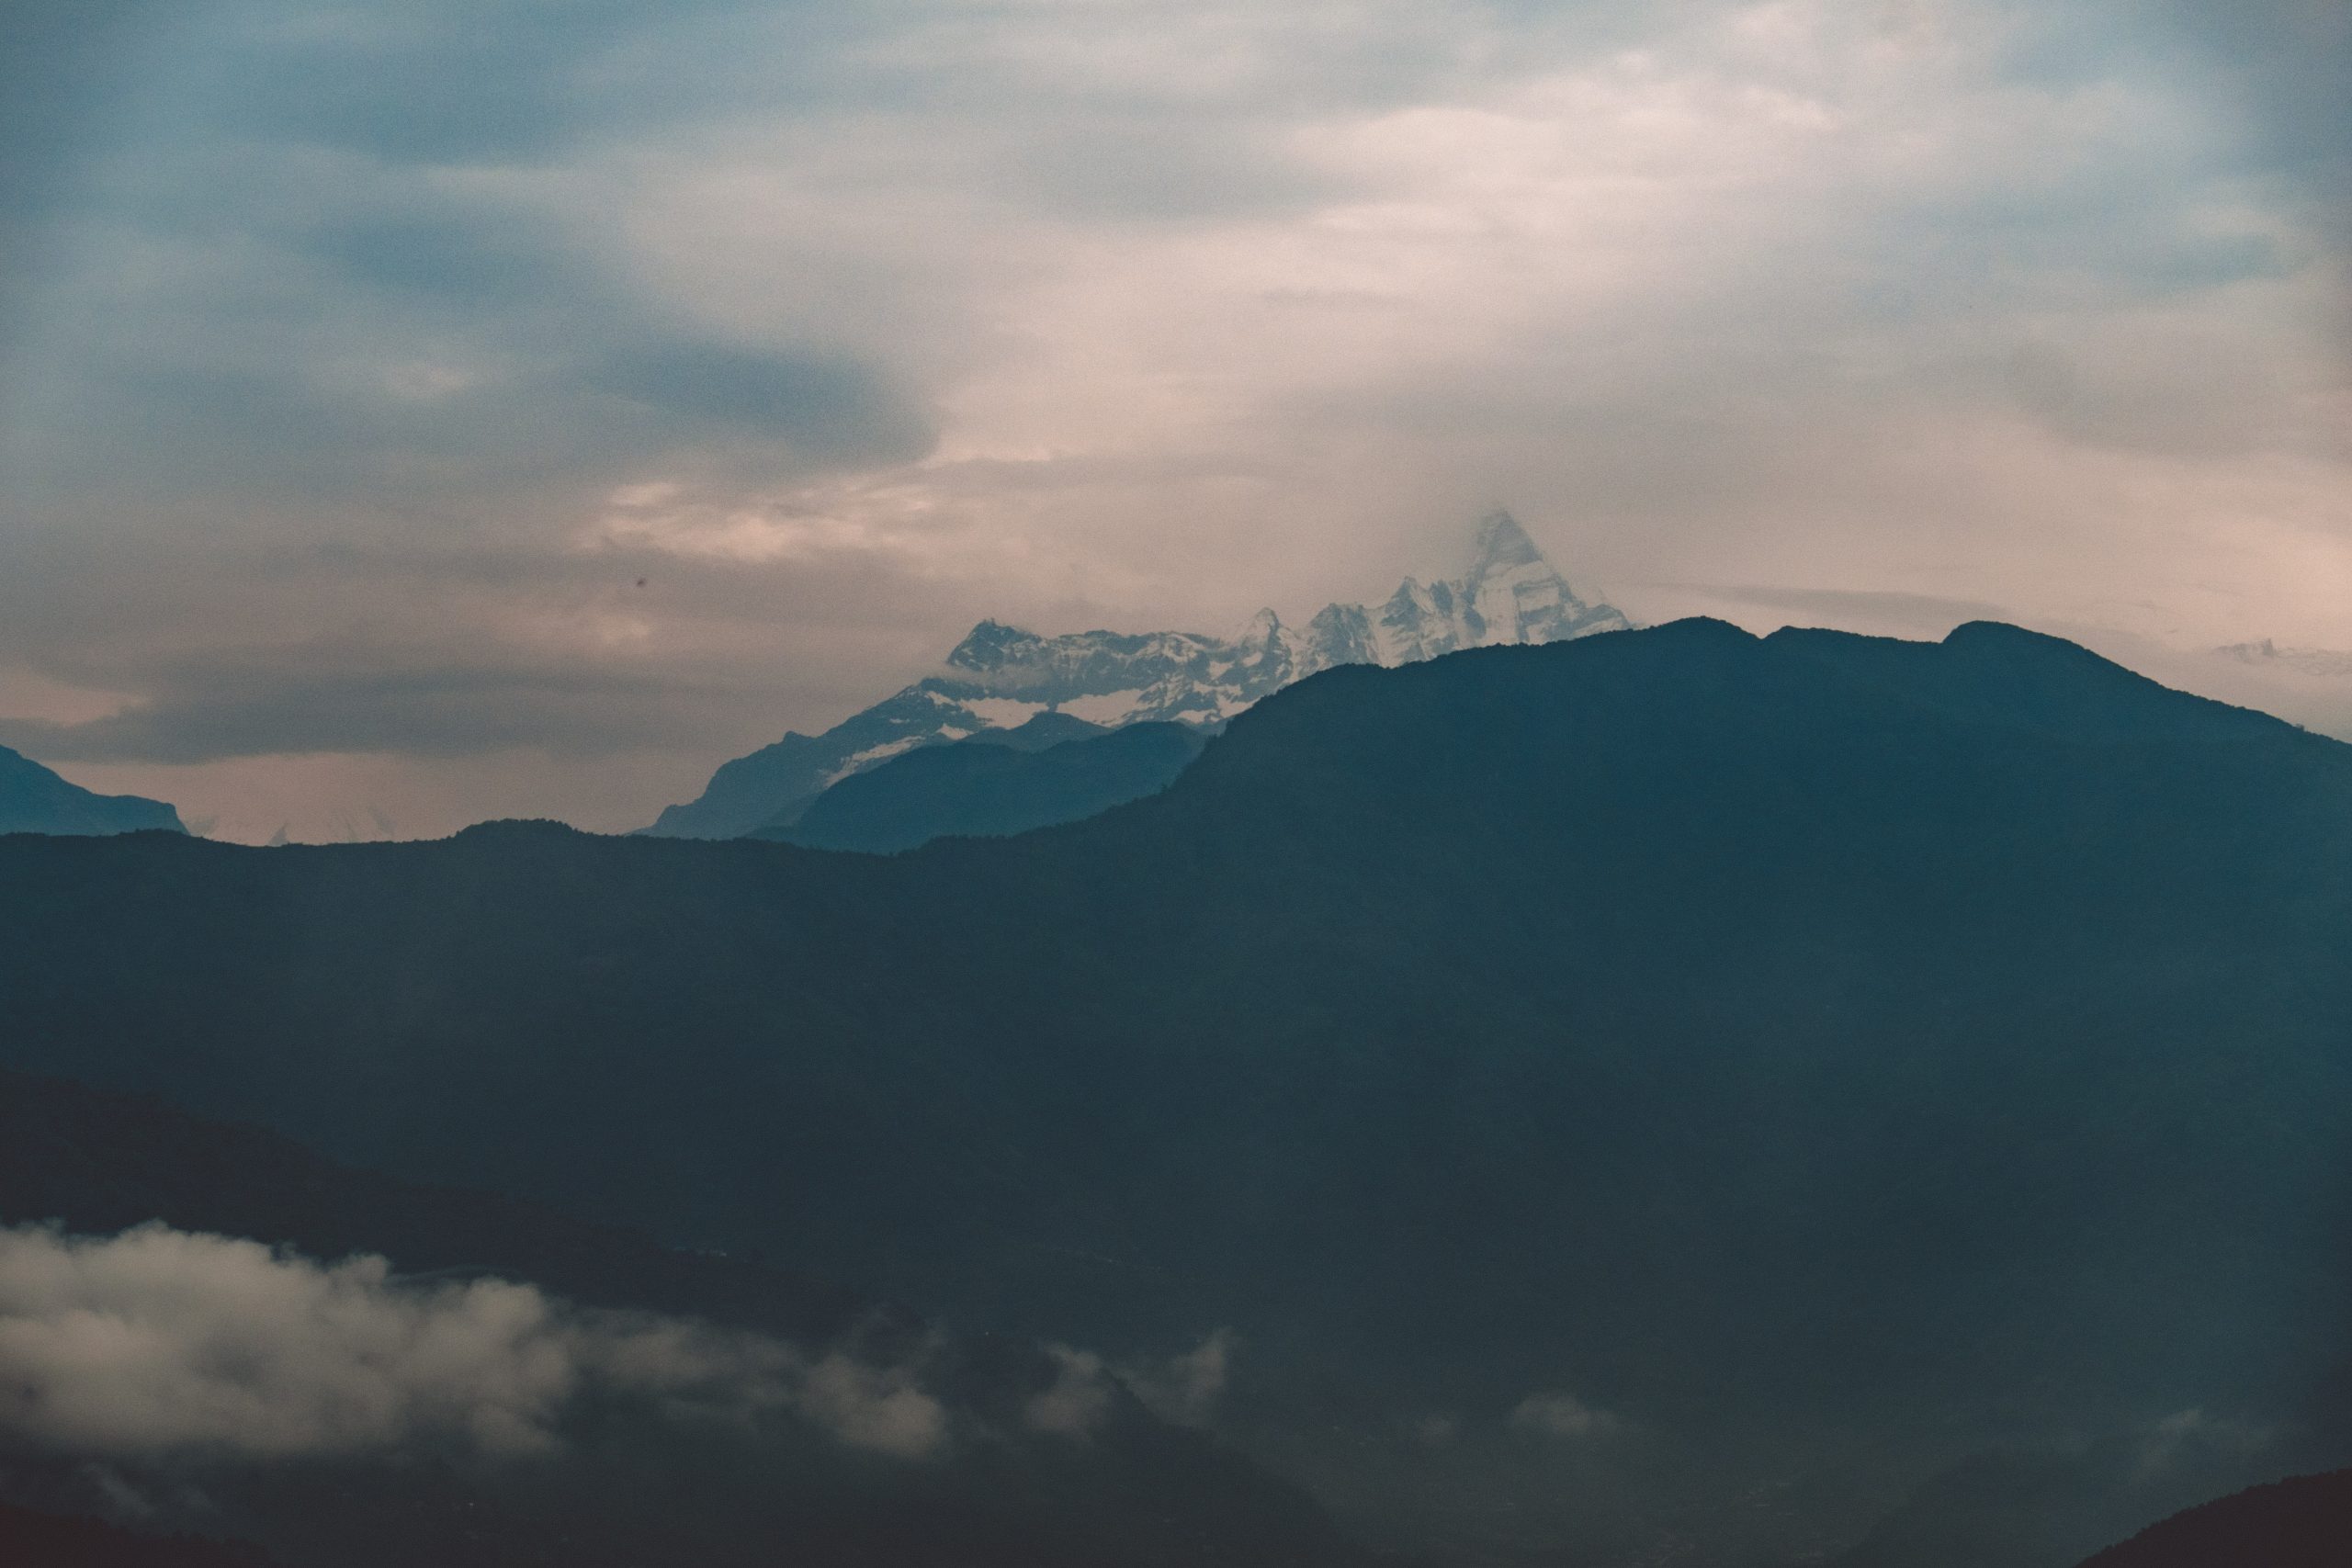 Annapurna top seen from far away